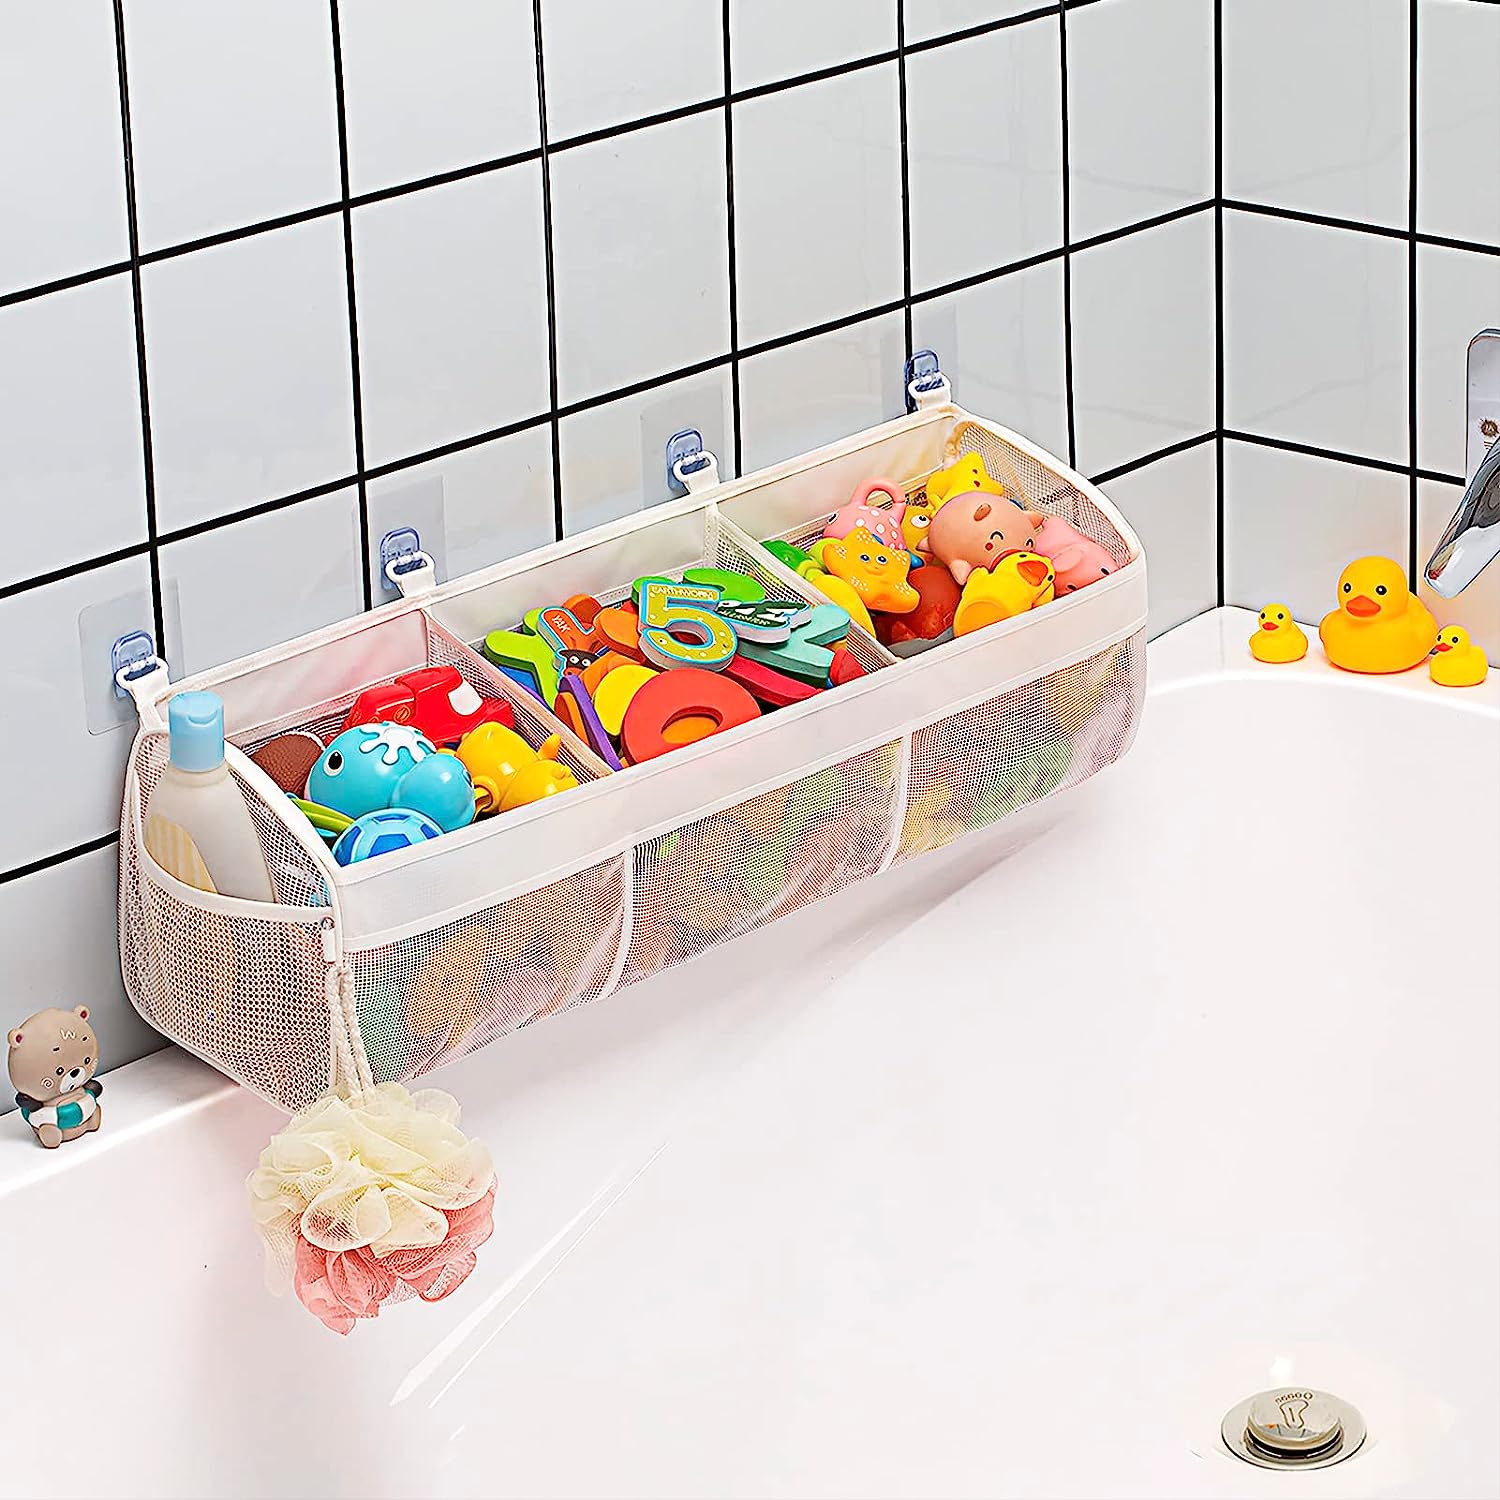 Bath toys in a bath organizer